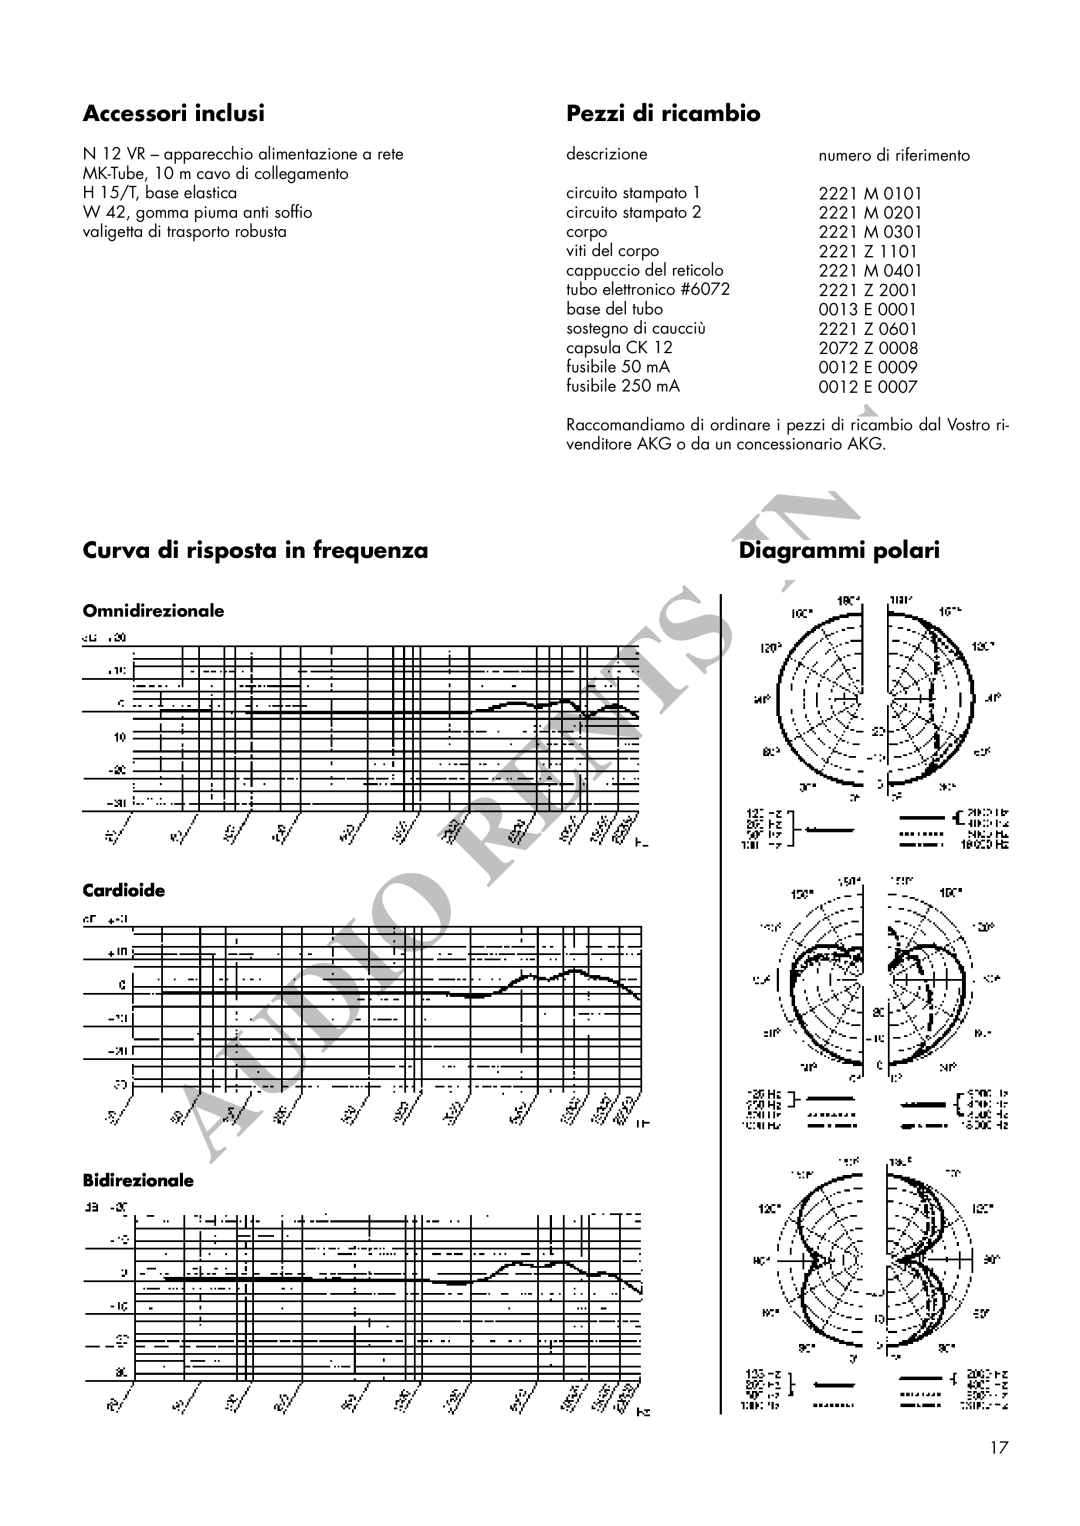 AKG Acoustics C 12VR manual Accessori inclusi, Pezzi di ricambio, Curva di risposta in frequenza, Diagrammi polari 